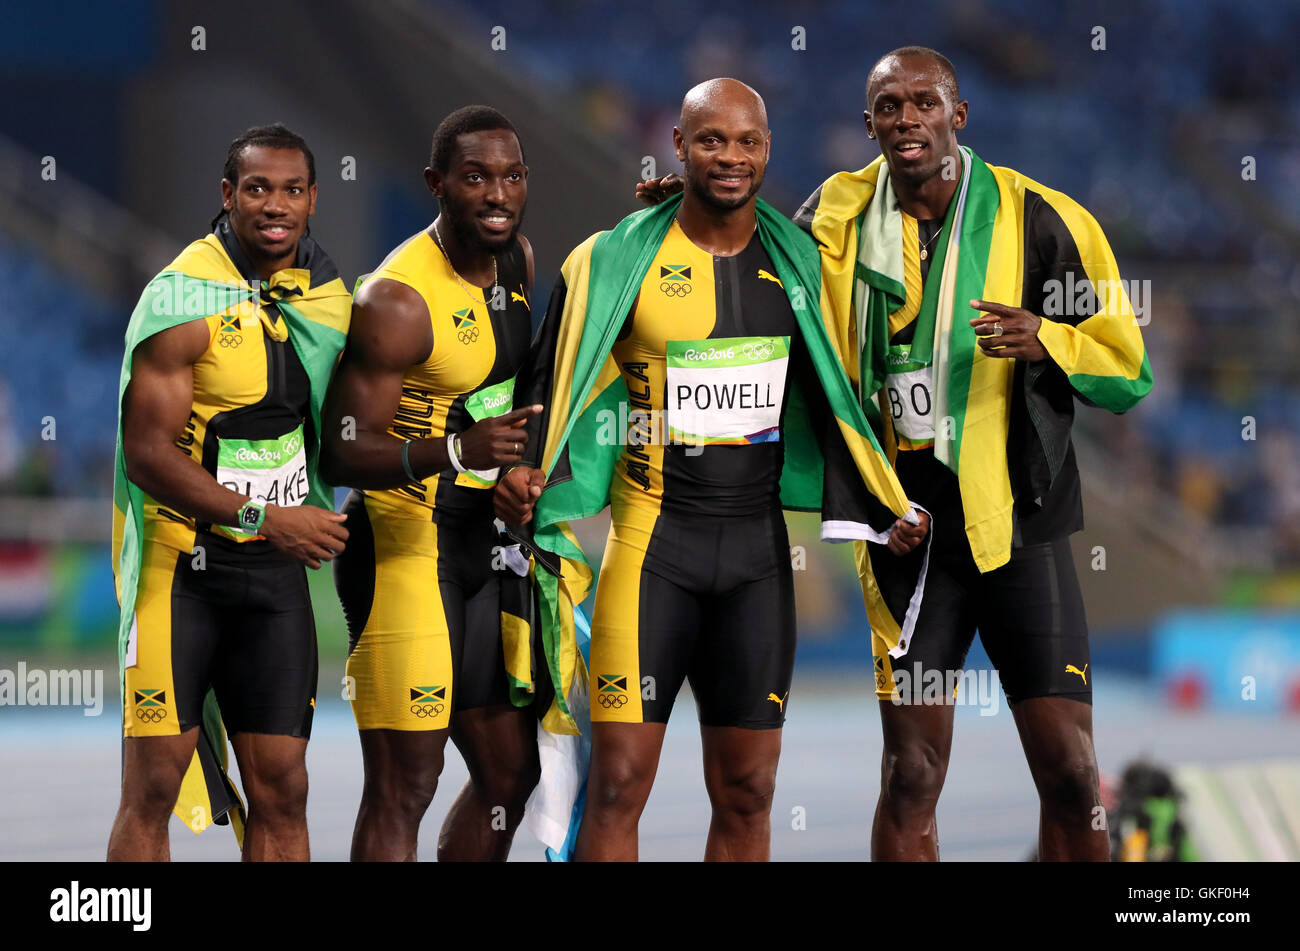 Jamaica S Gold Medal Winning Men S 4 X 100m Relay Team Of Yohan Blake Nickel Ashmeade Asafa